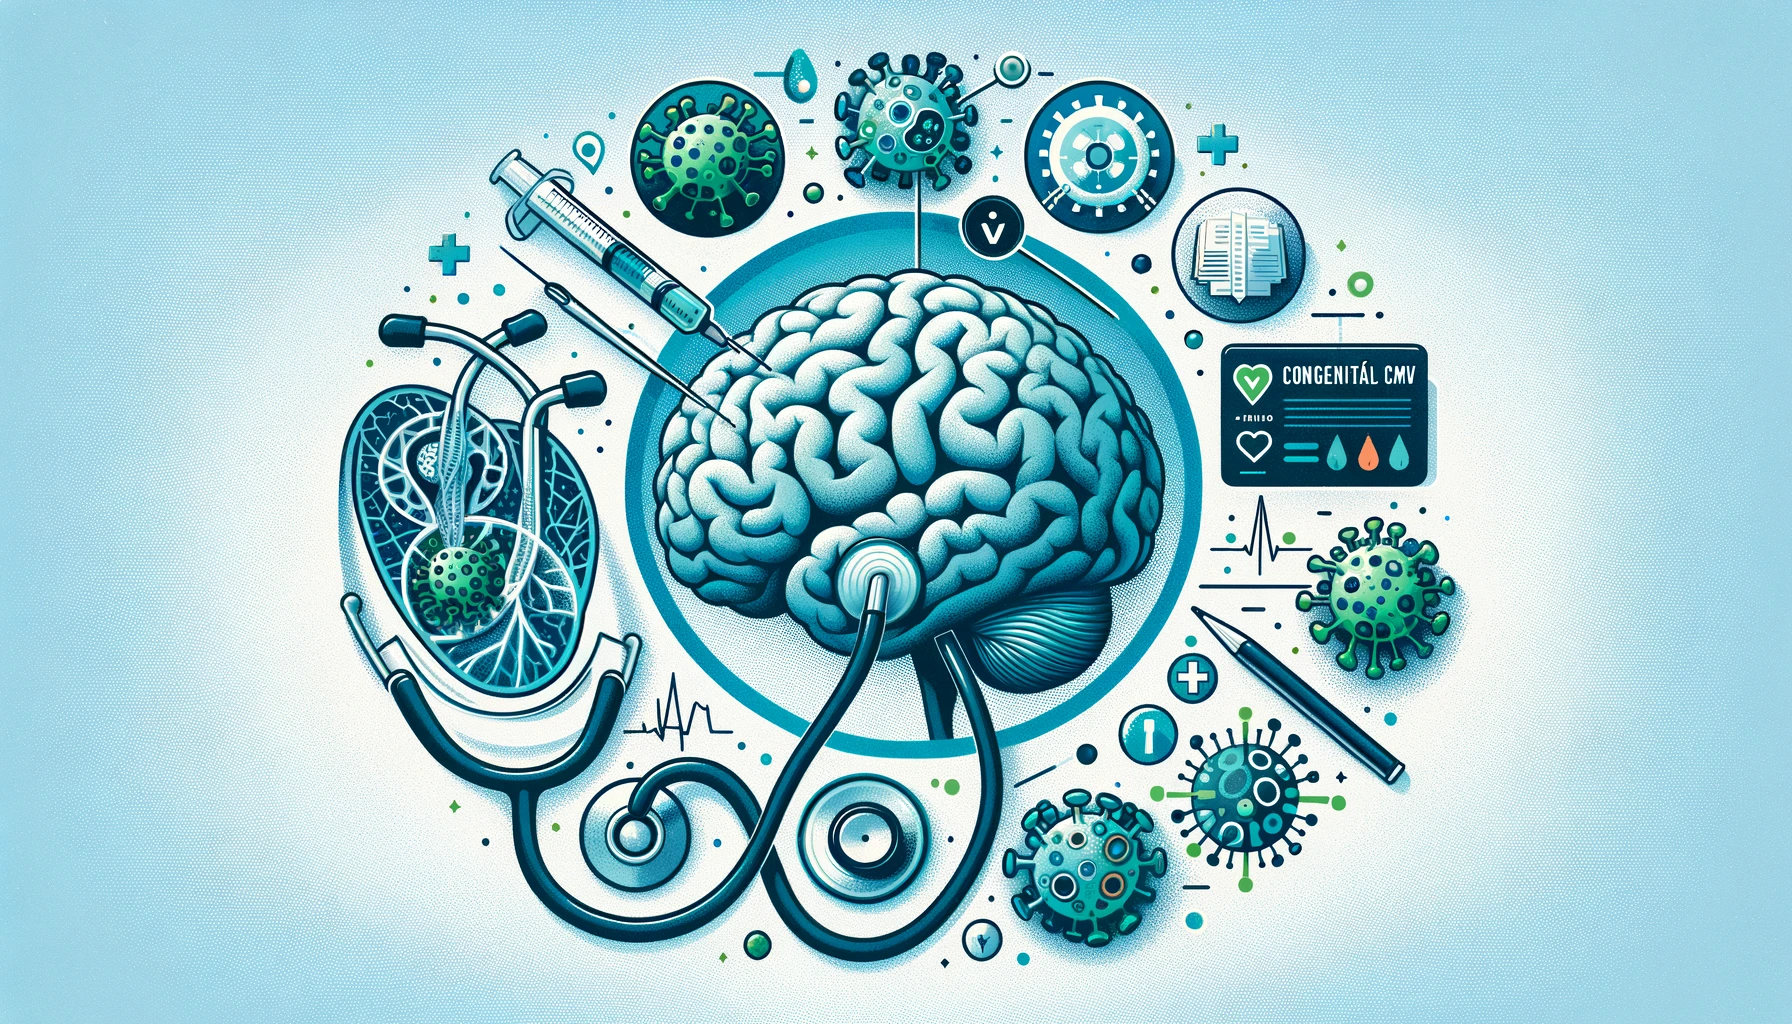 Banner de blog ilustrando o diagnóstico e impacto do cCMV, com elementos visuais como um estetoscópio, imagens cerebrais e uma representação do vírus CMV